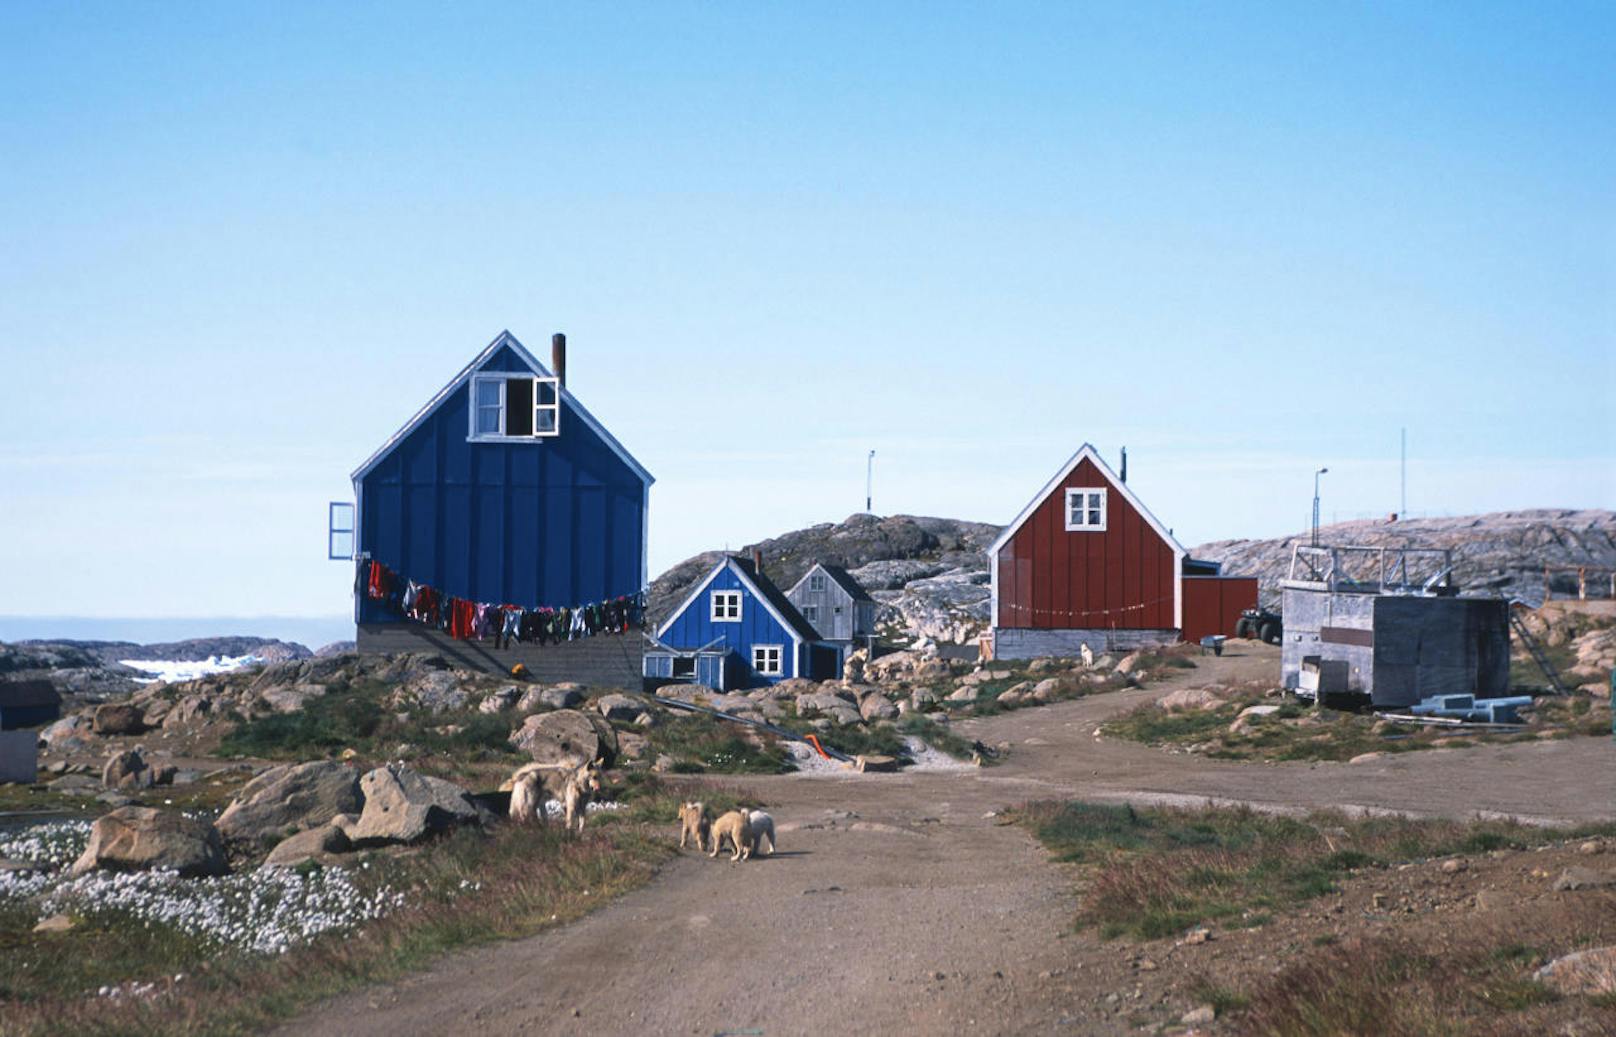 <b>Arctic Circle Trail (Grönland)</b>
Kurz aber außergewöhnlich: Dieser Weg ist zwar nur 170 Kilometer lang, liegt dafür aber in Grönland! Jetzt, wo alle nach Island pilgern, ist das doch eine schöne Möglichkeit. Es wird empfohlen, diese Wanderung im Sommer zu machen, weil sonst Schnee liegt. Sie ist in knapp zwei Wochen zu schaffen. Auf dem Bild ist die erste von sieben Hütten zu sehen, in denen kostenlos übernachtet werden darf. Wäre doch was für die nächsten Sommerferien.